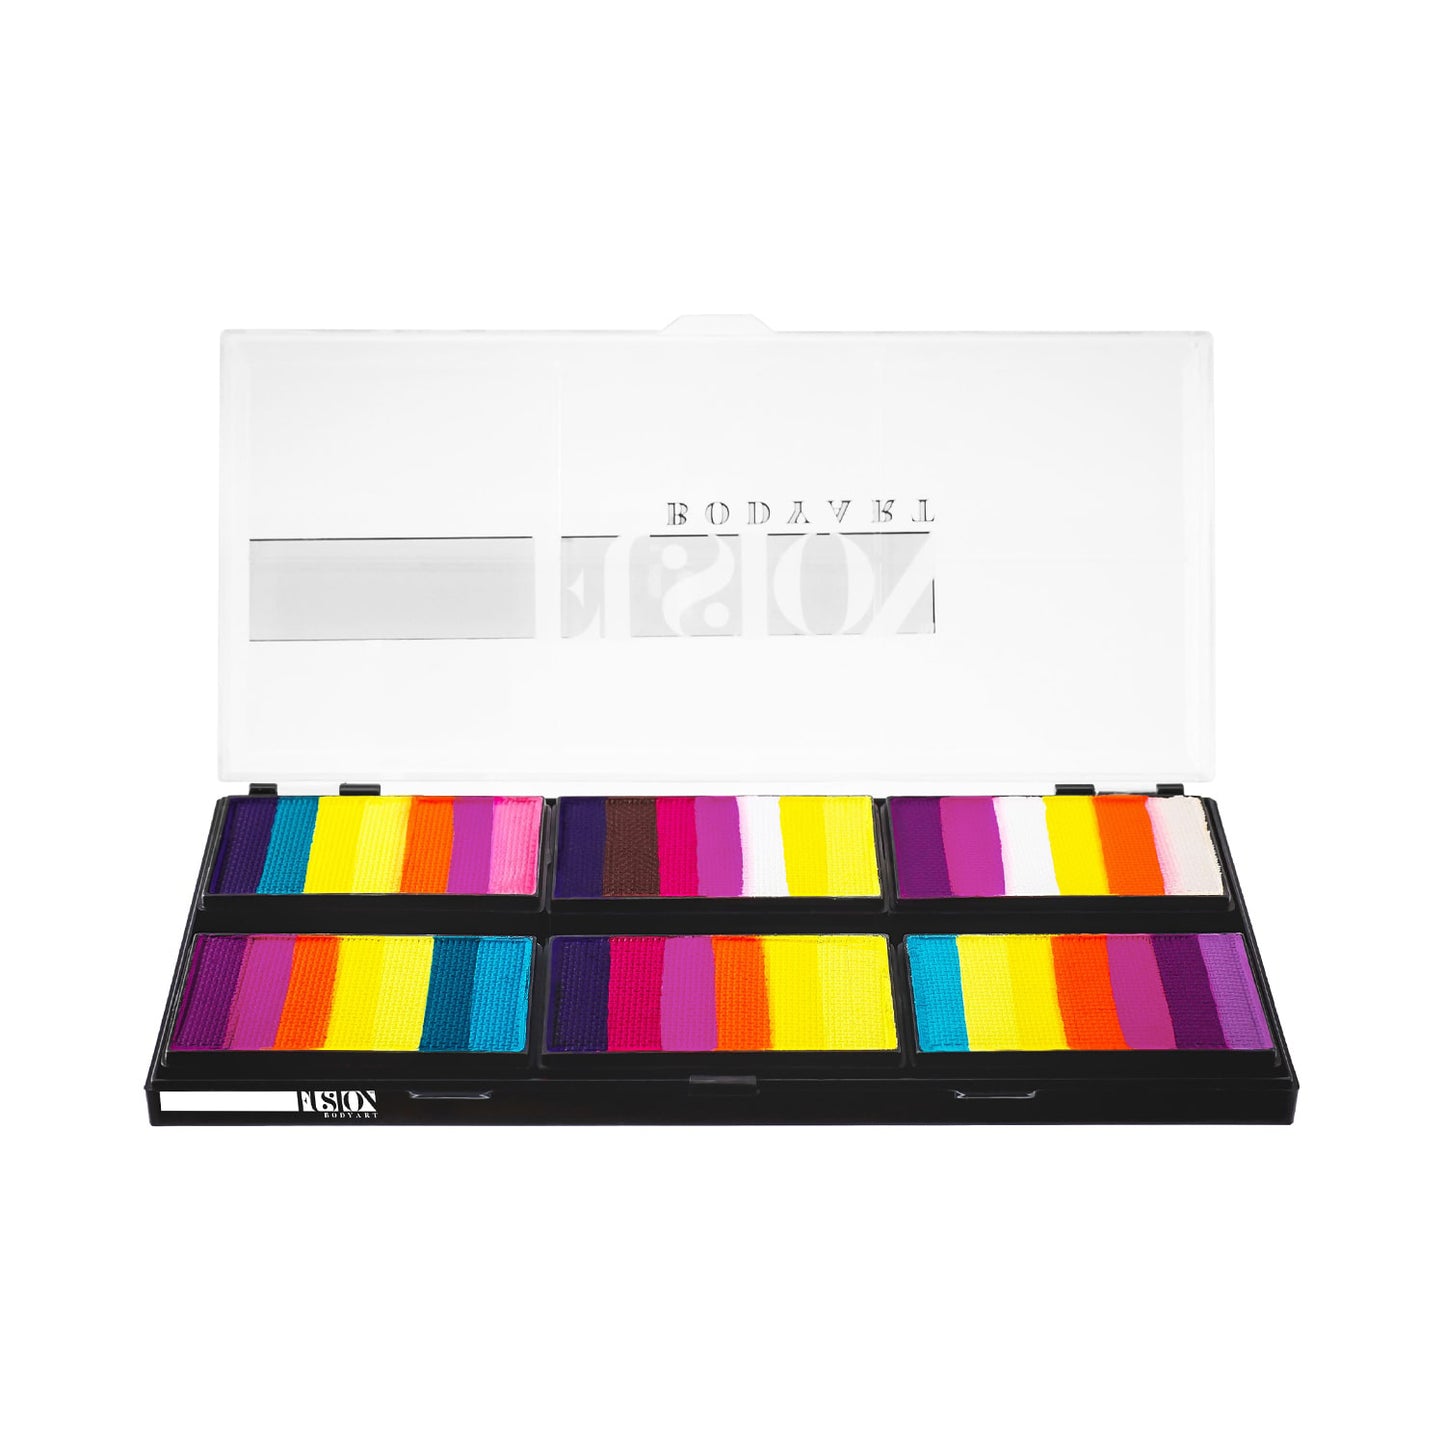 Fusion Body Art & FX Spectrum Palette - Leanne's Vivid Rainbow Petal Palette (Non Neon) - 6 Cakes/25 gm